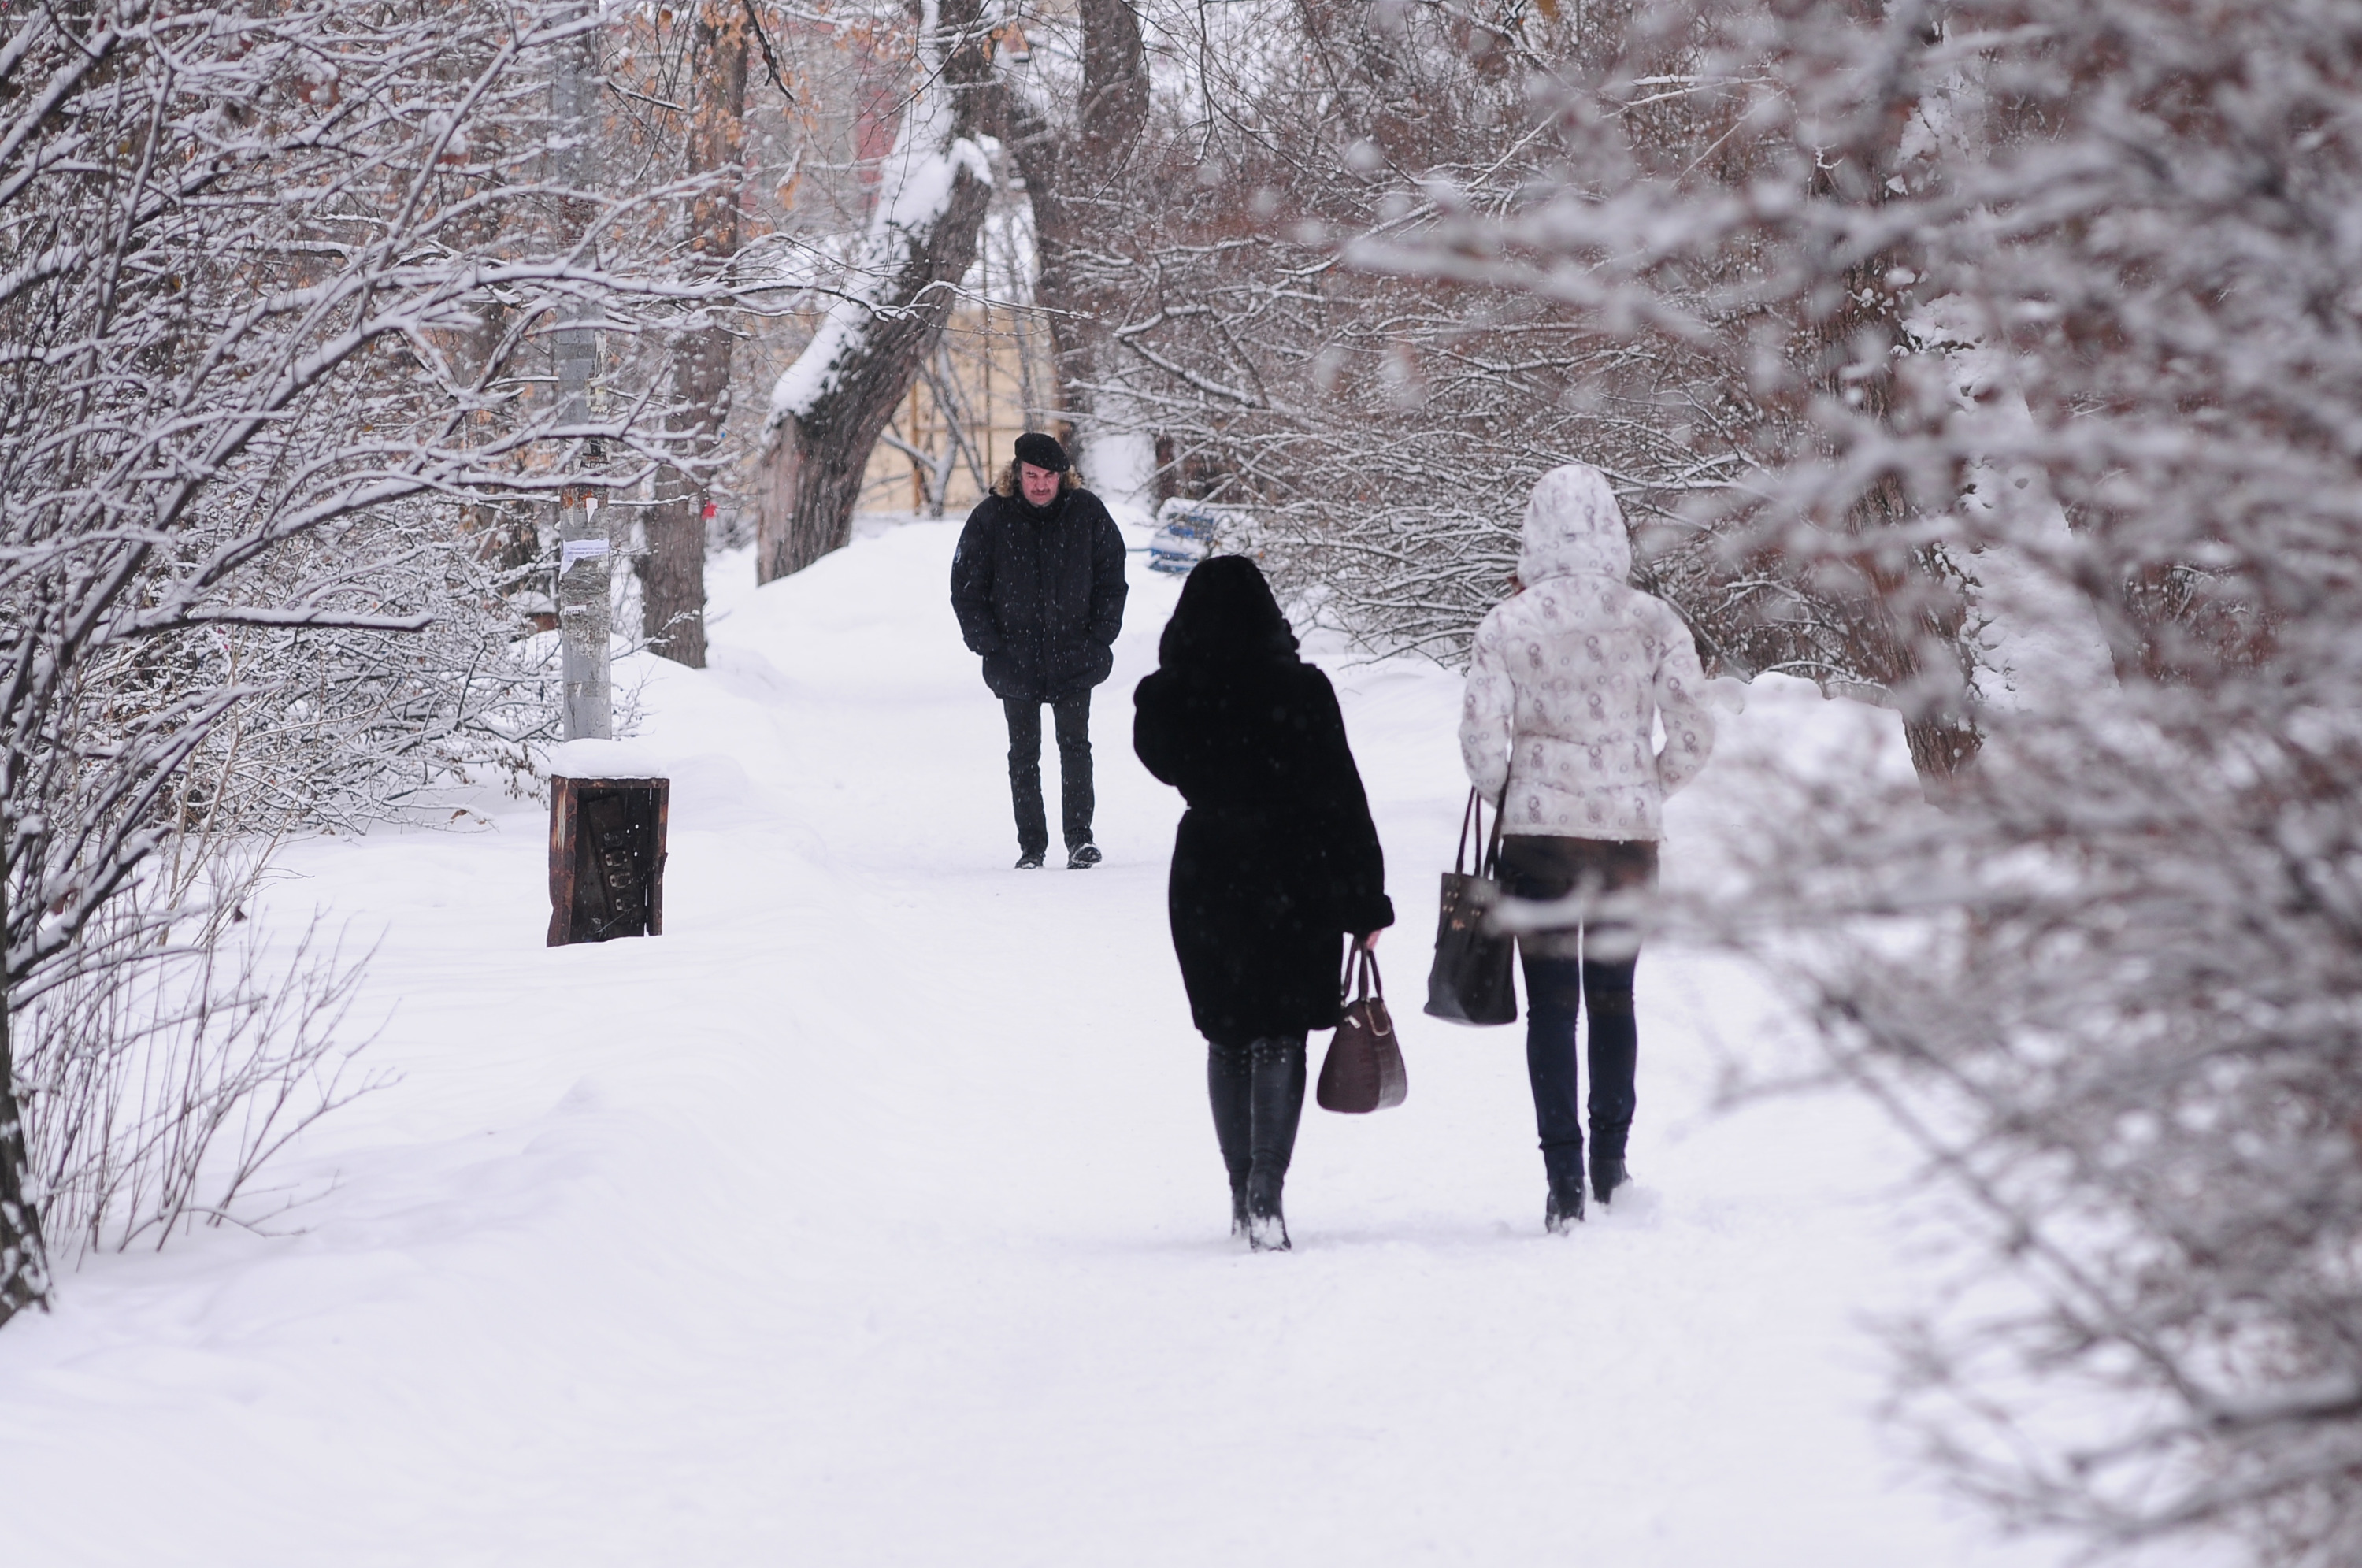 За сутки в Екатеринбурге температура воздуха поднимется на 20 °C. Врач рассказала, как это пережить